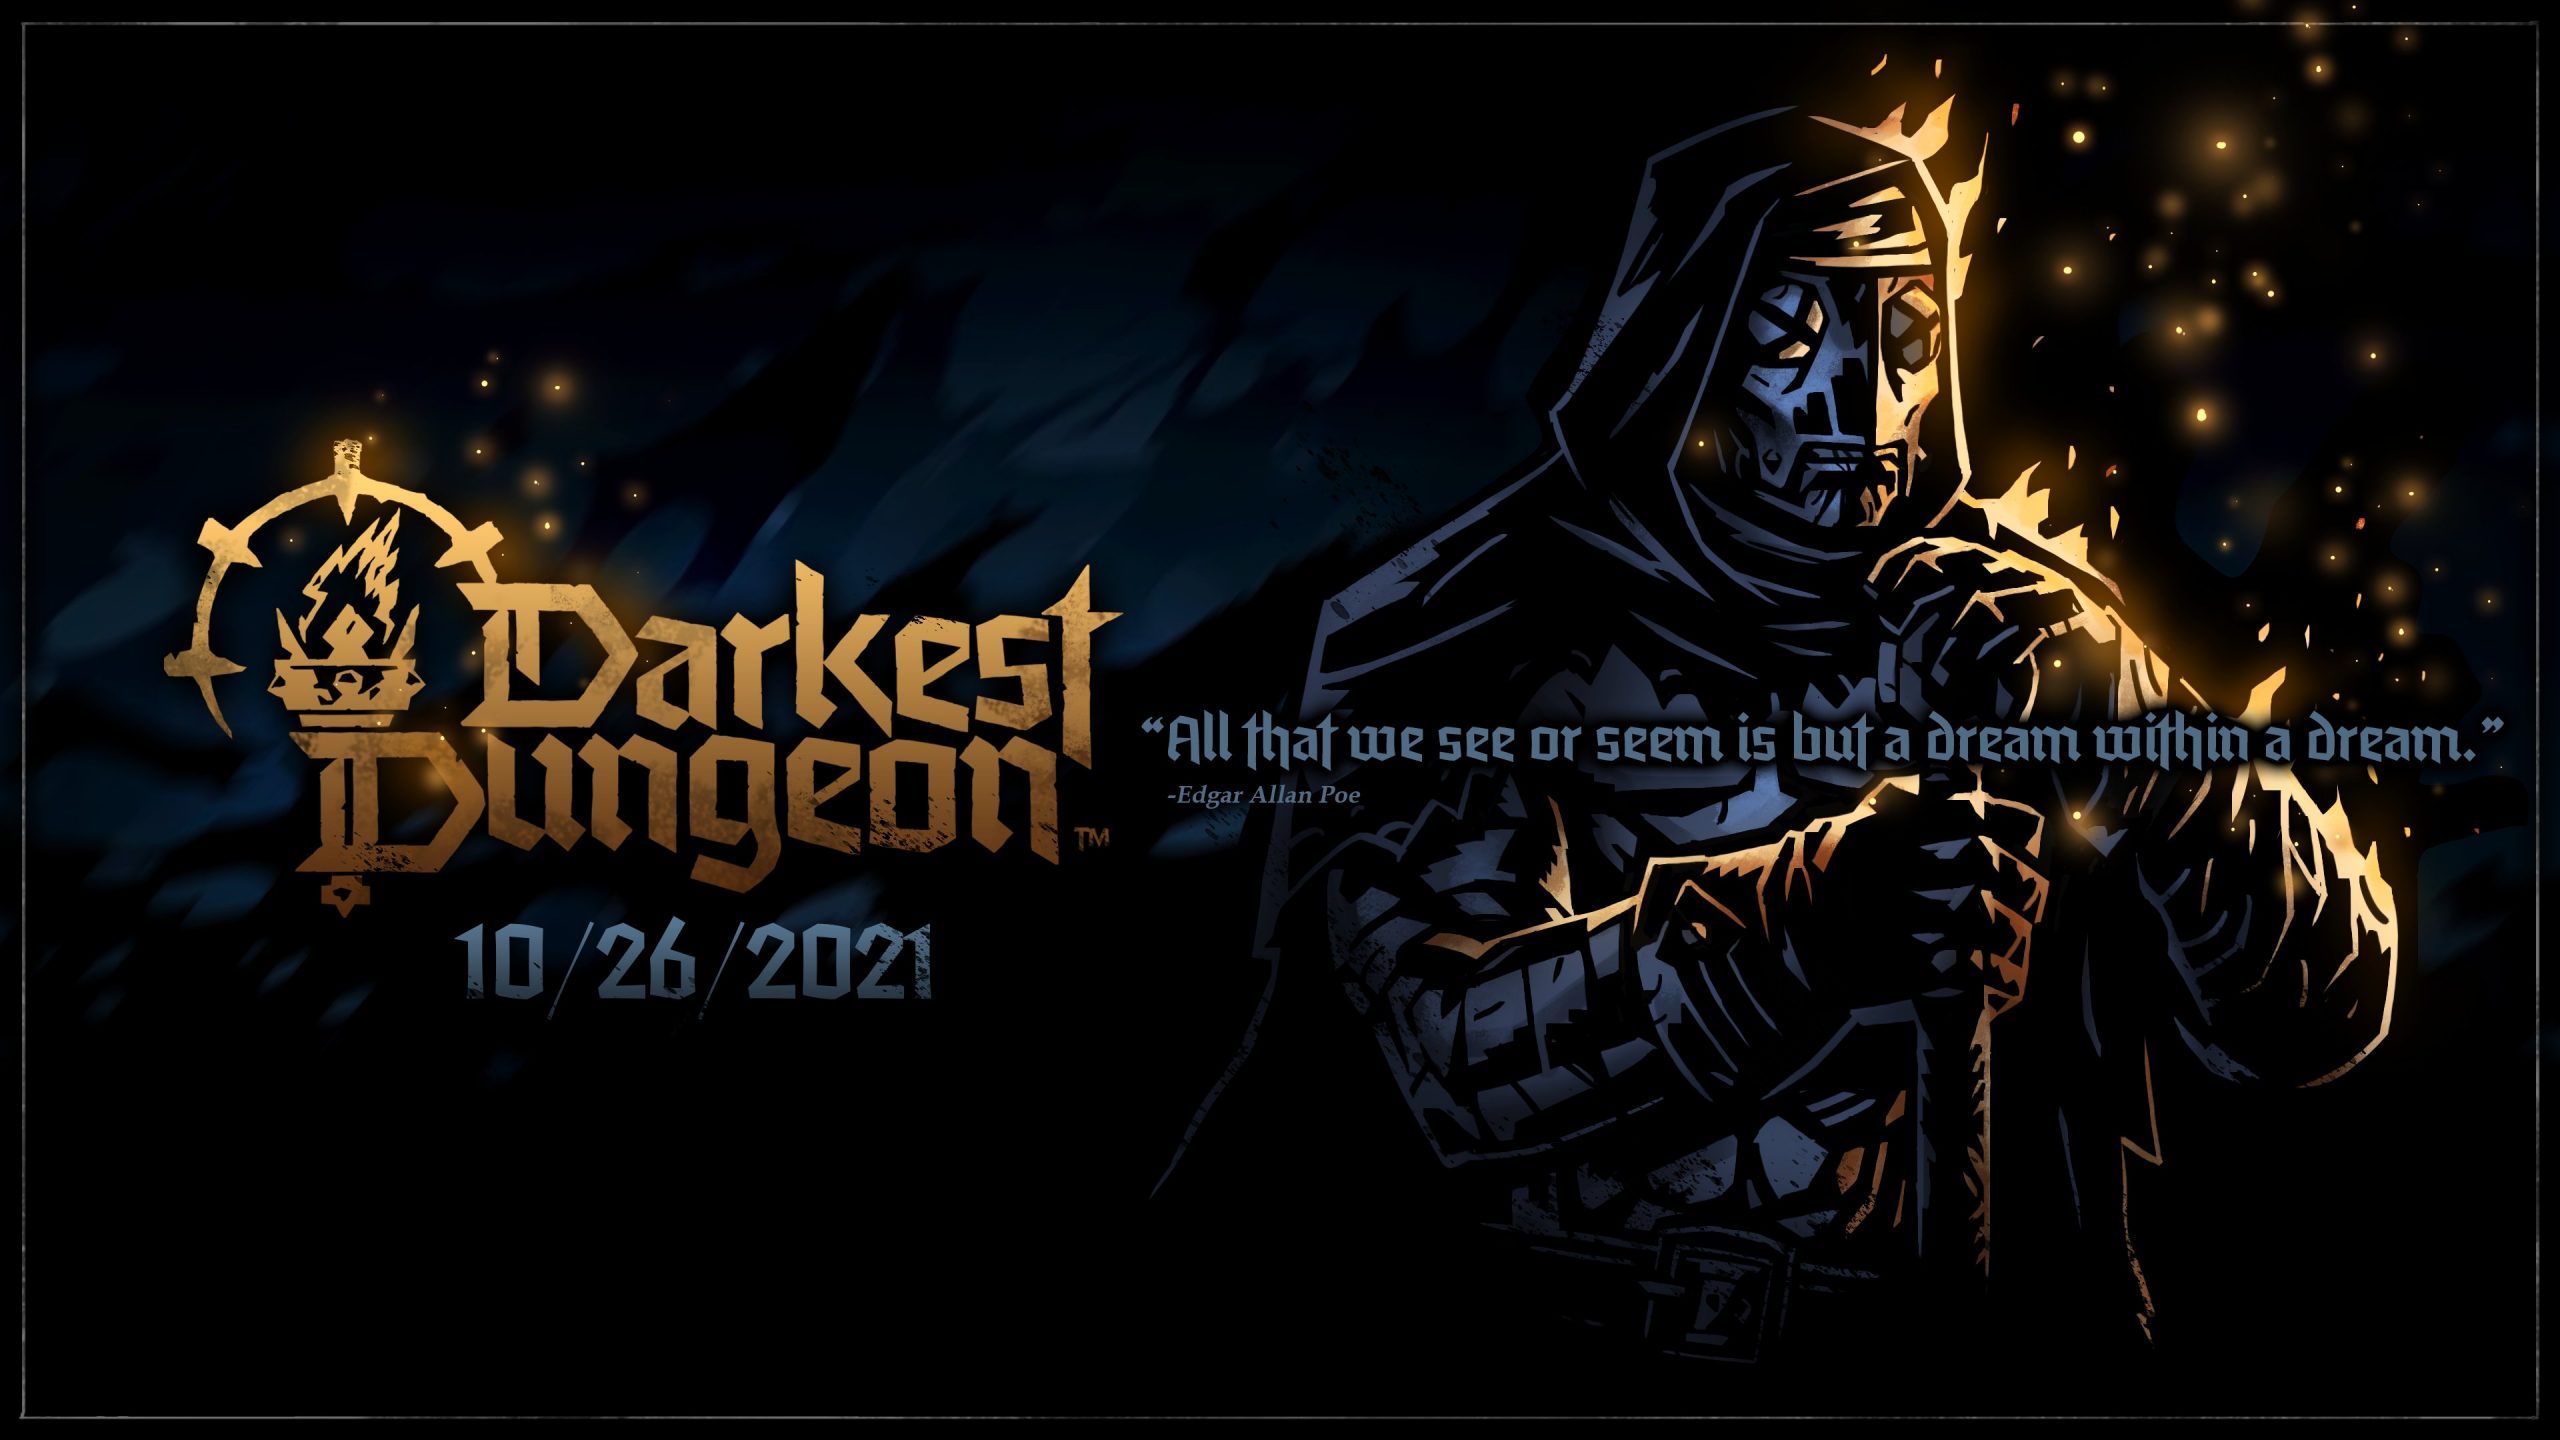 darkest-dungeon-ii-09-13-21-1-scaled-4947791